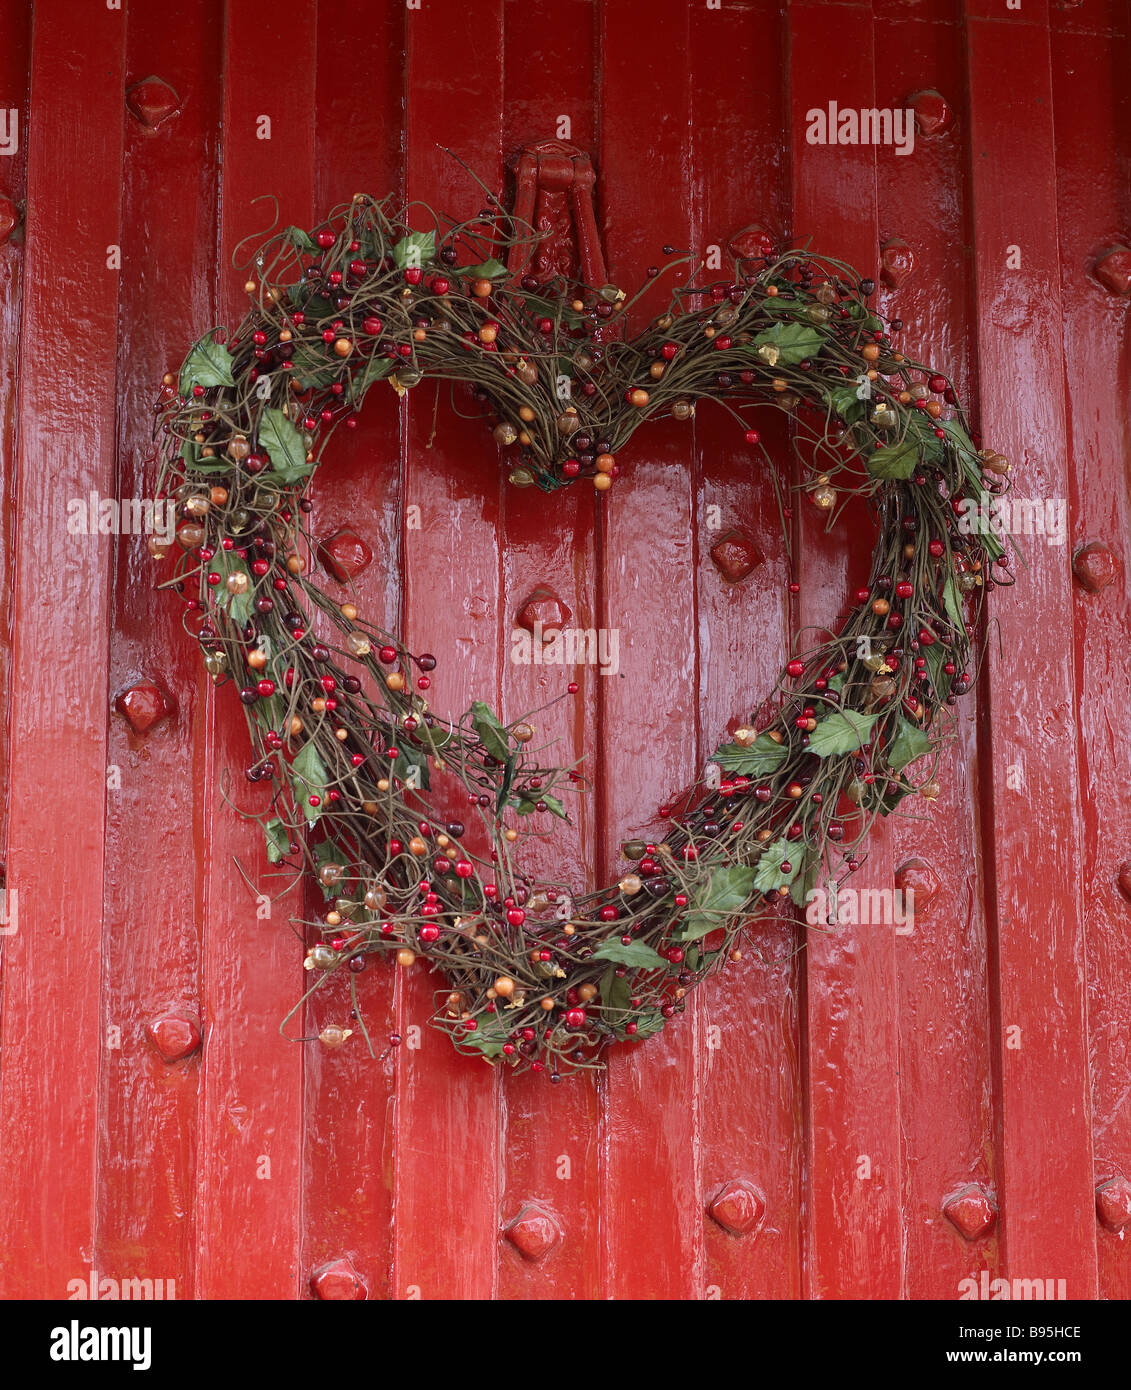 heart shaped wreath Stock Photo